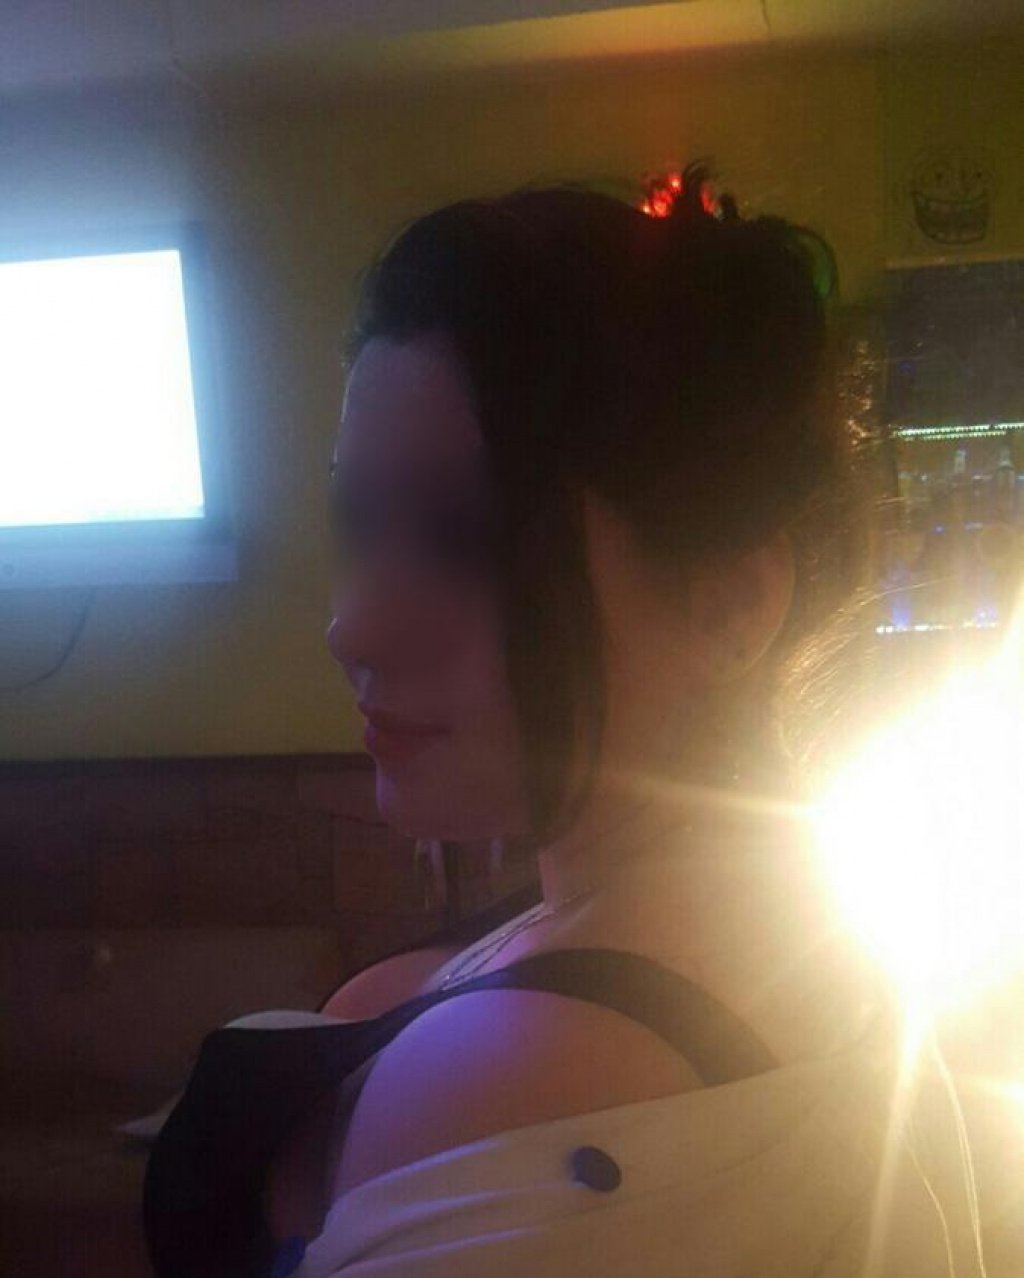 Ирина: проститутки индивидуалки в Нижнем Новгороде